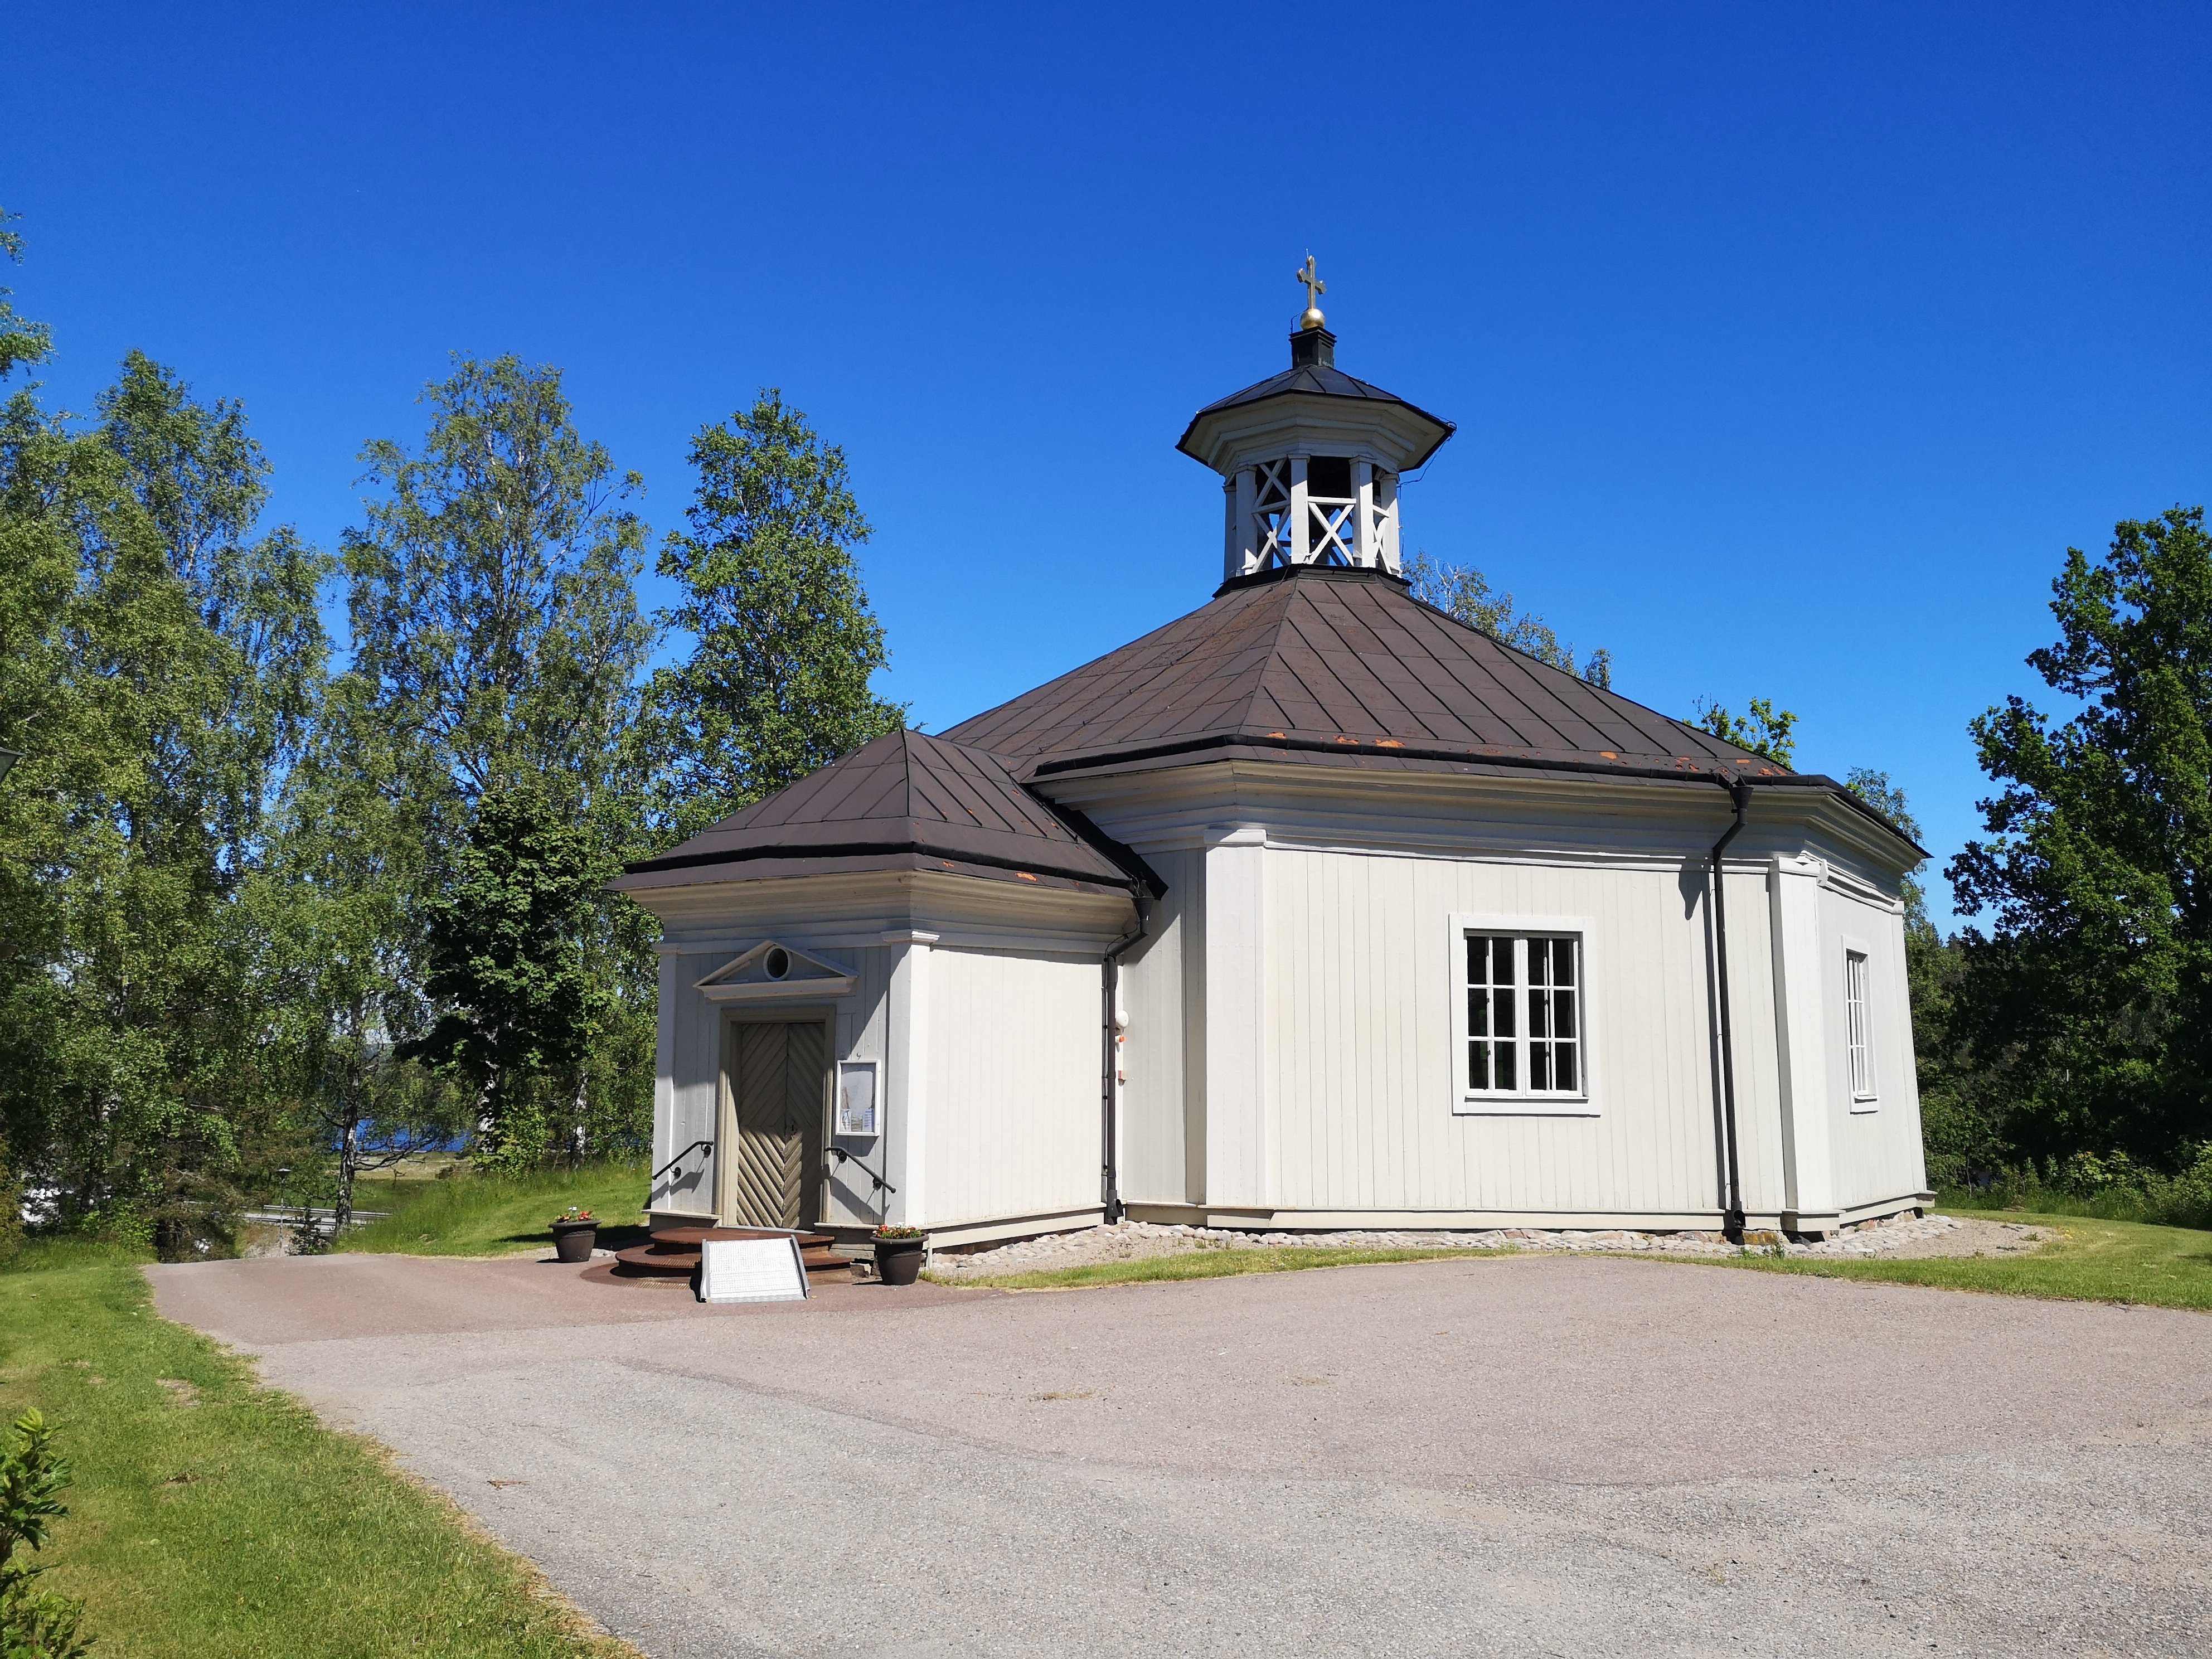 Malingsbo kyrka-Söderbärke kyrka, Romboleden. Etapp 1 Smedjebacken